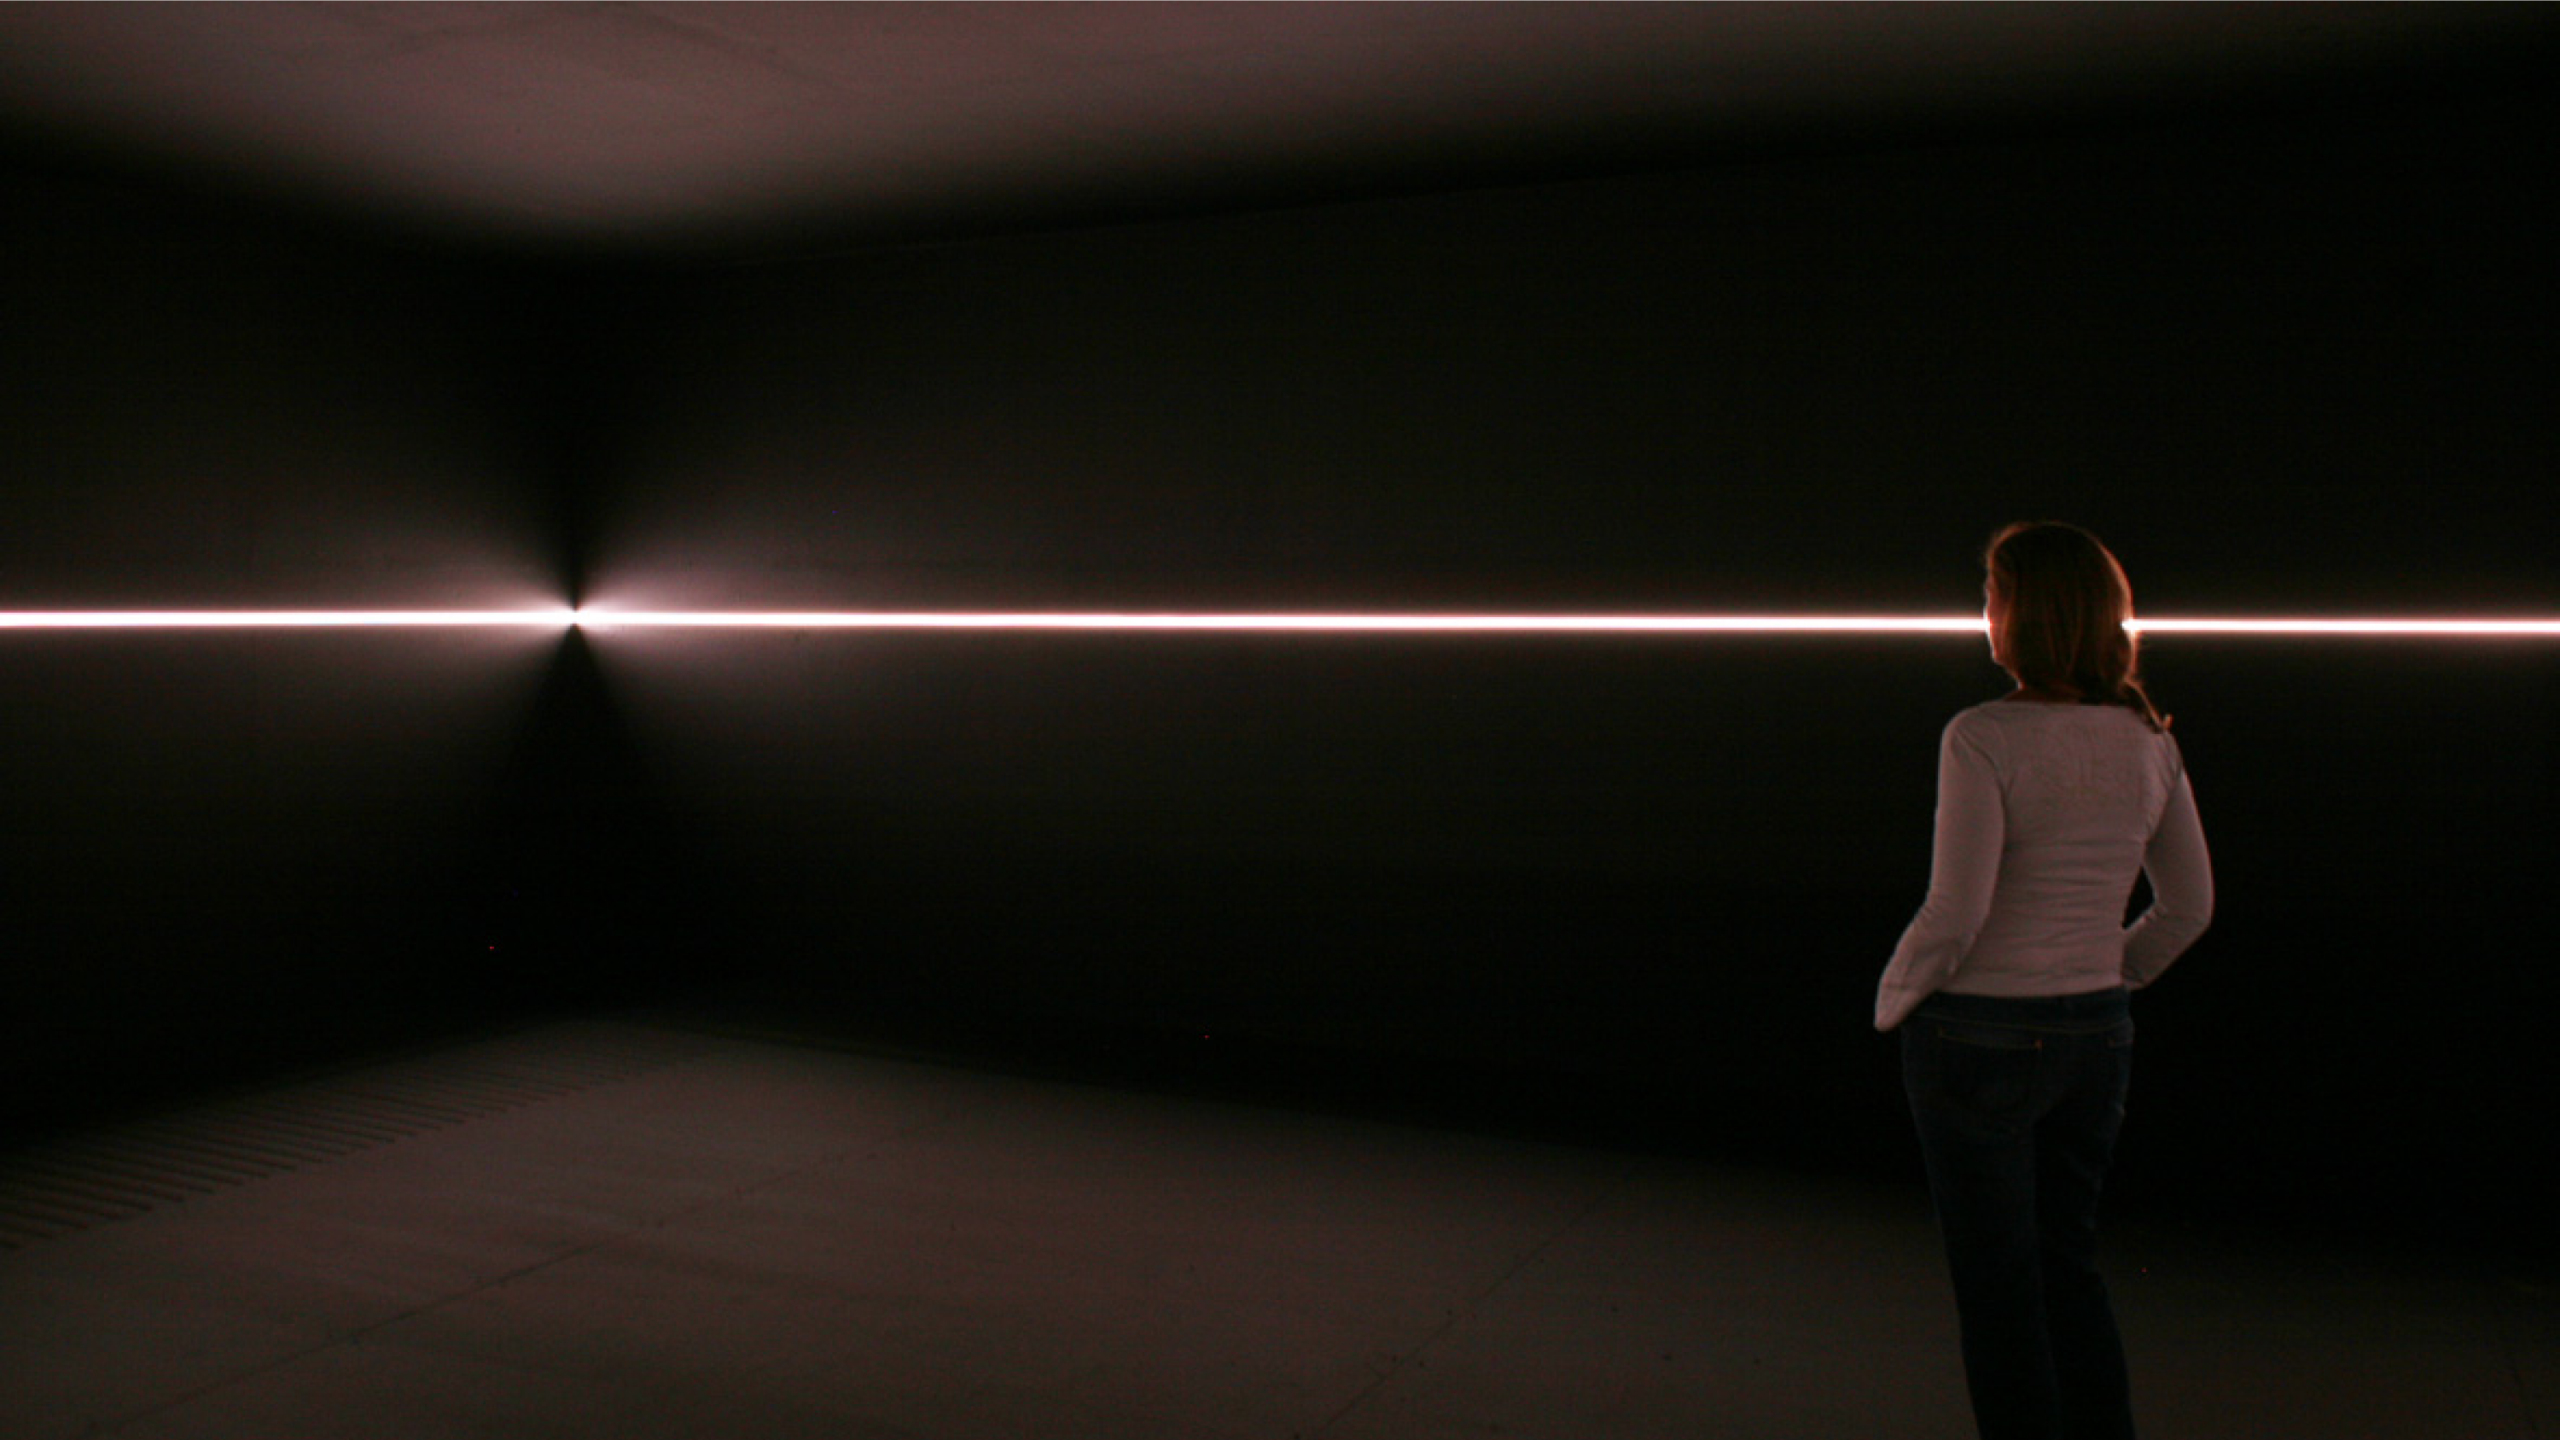 Lichtinstallation "Your Black Horizon" vom Lichtkünstler Olafur Eliasson. Technologie: feno.